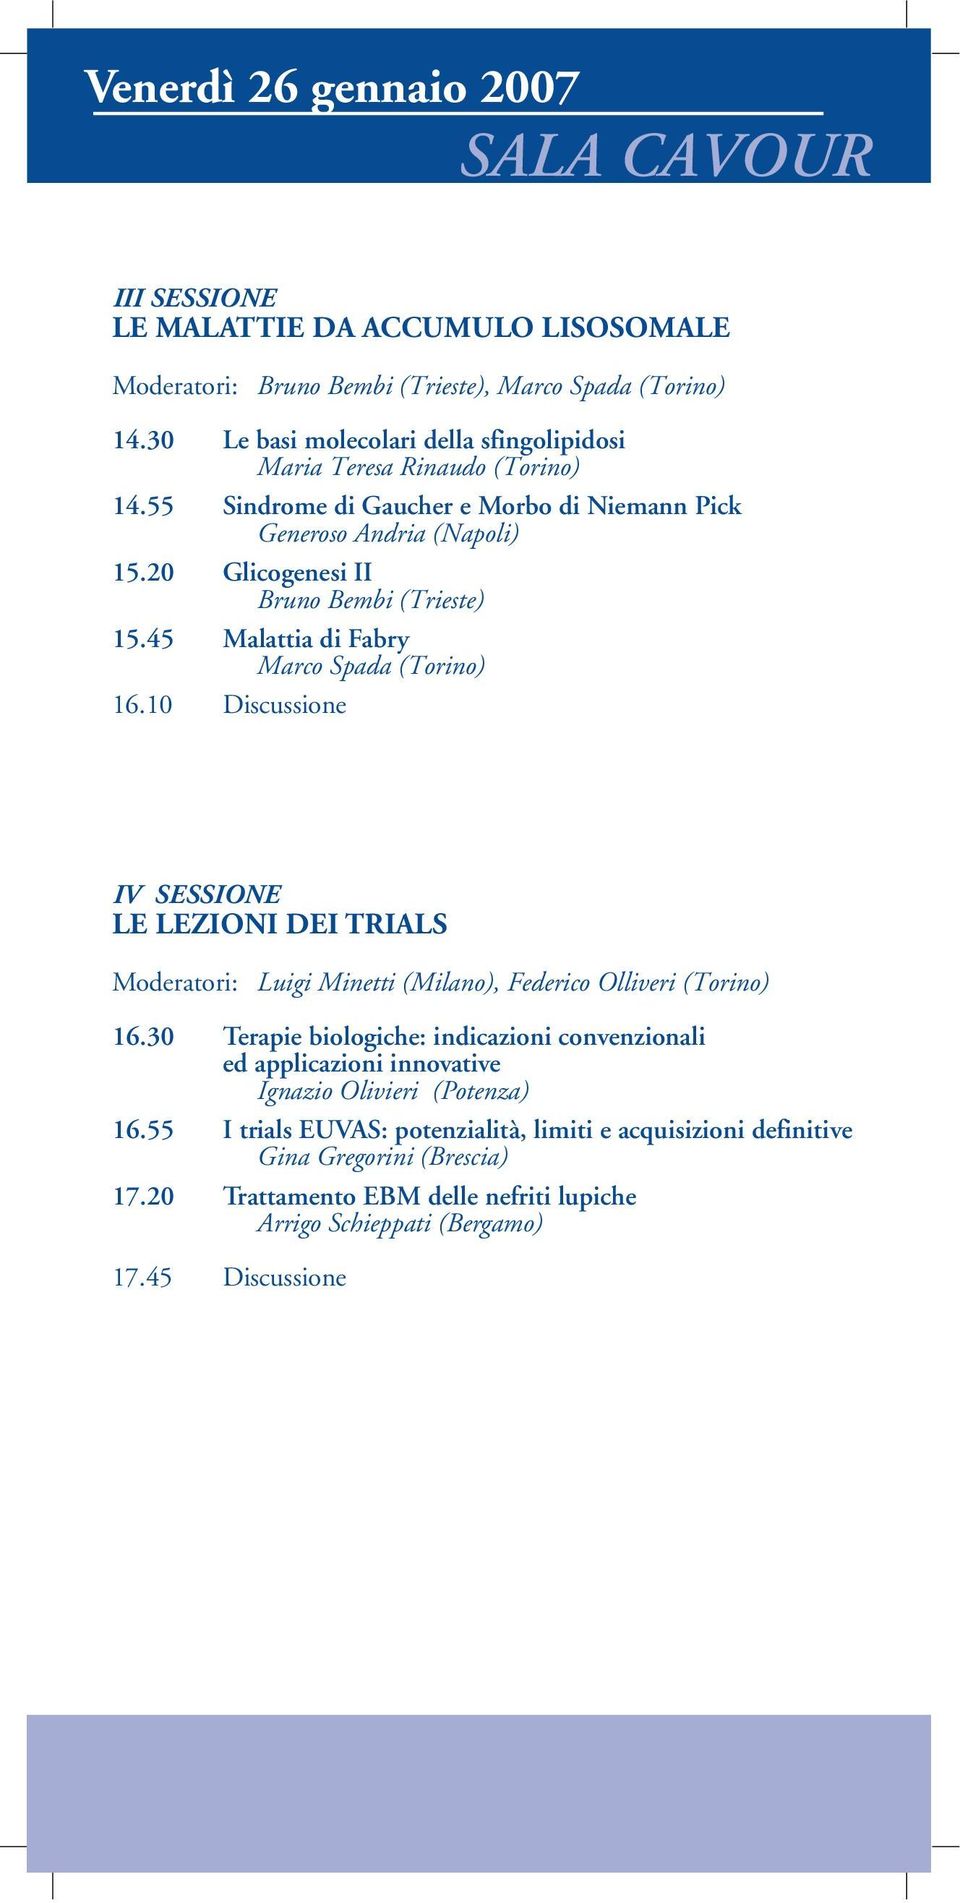 45 Malattia di Fabry Marco Spada (Torino) 16.10 Discussione IV SESSIONE LE LEZIONI DEI TRIALS Moderatori: Luigi Minetti (Milano), Federico Olliveri (Torino) 16.